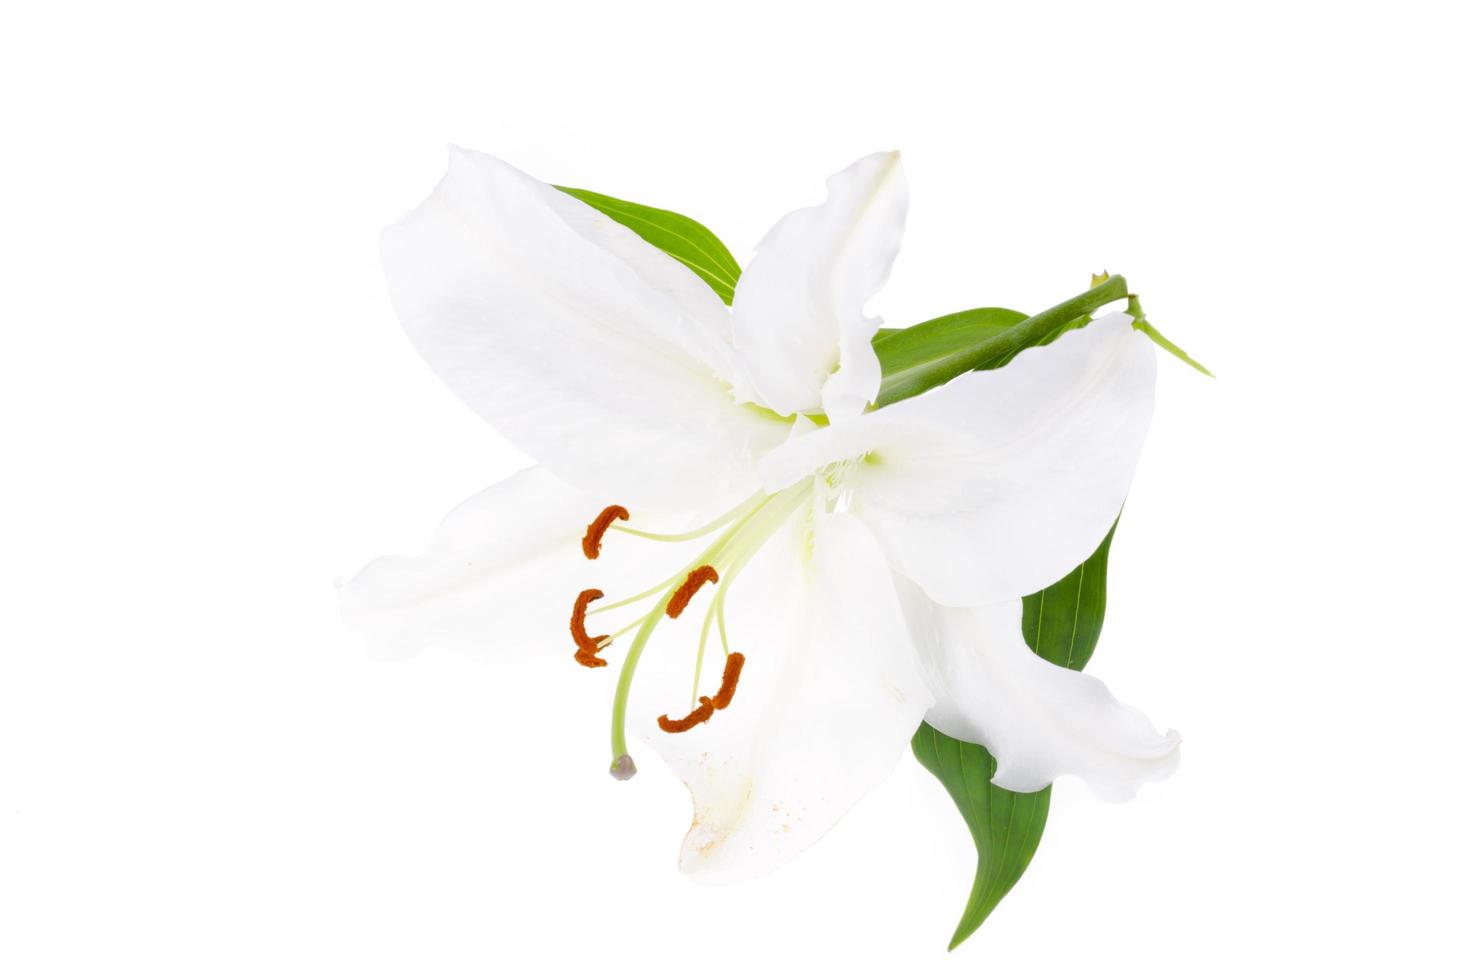 delicada flor de lírio branco, isolada. foto de estúdio